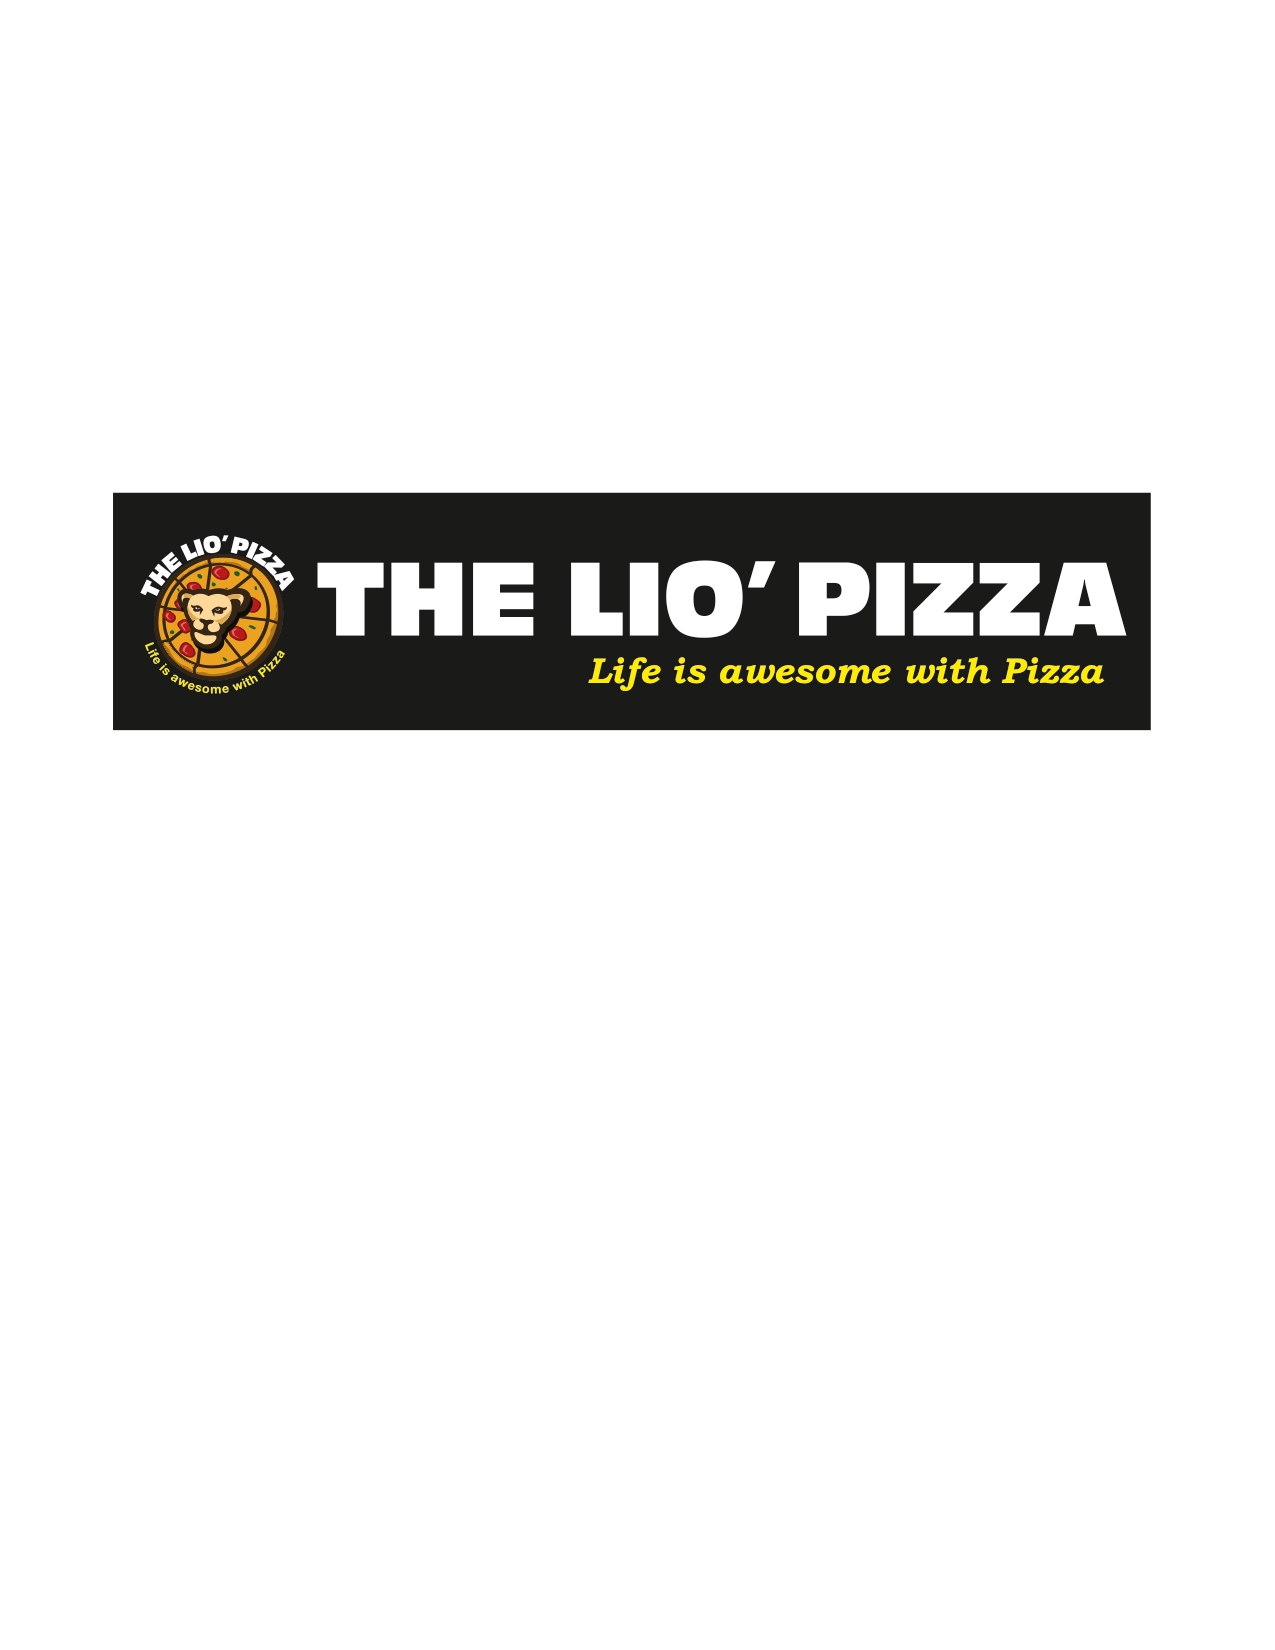 The Lio Pizza